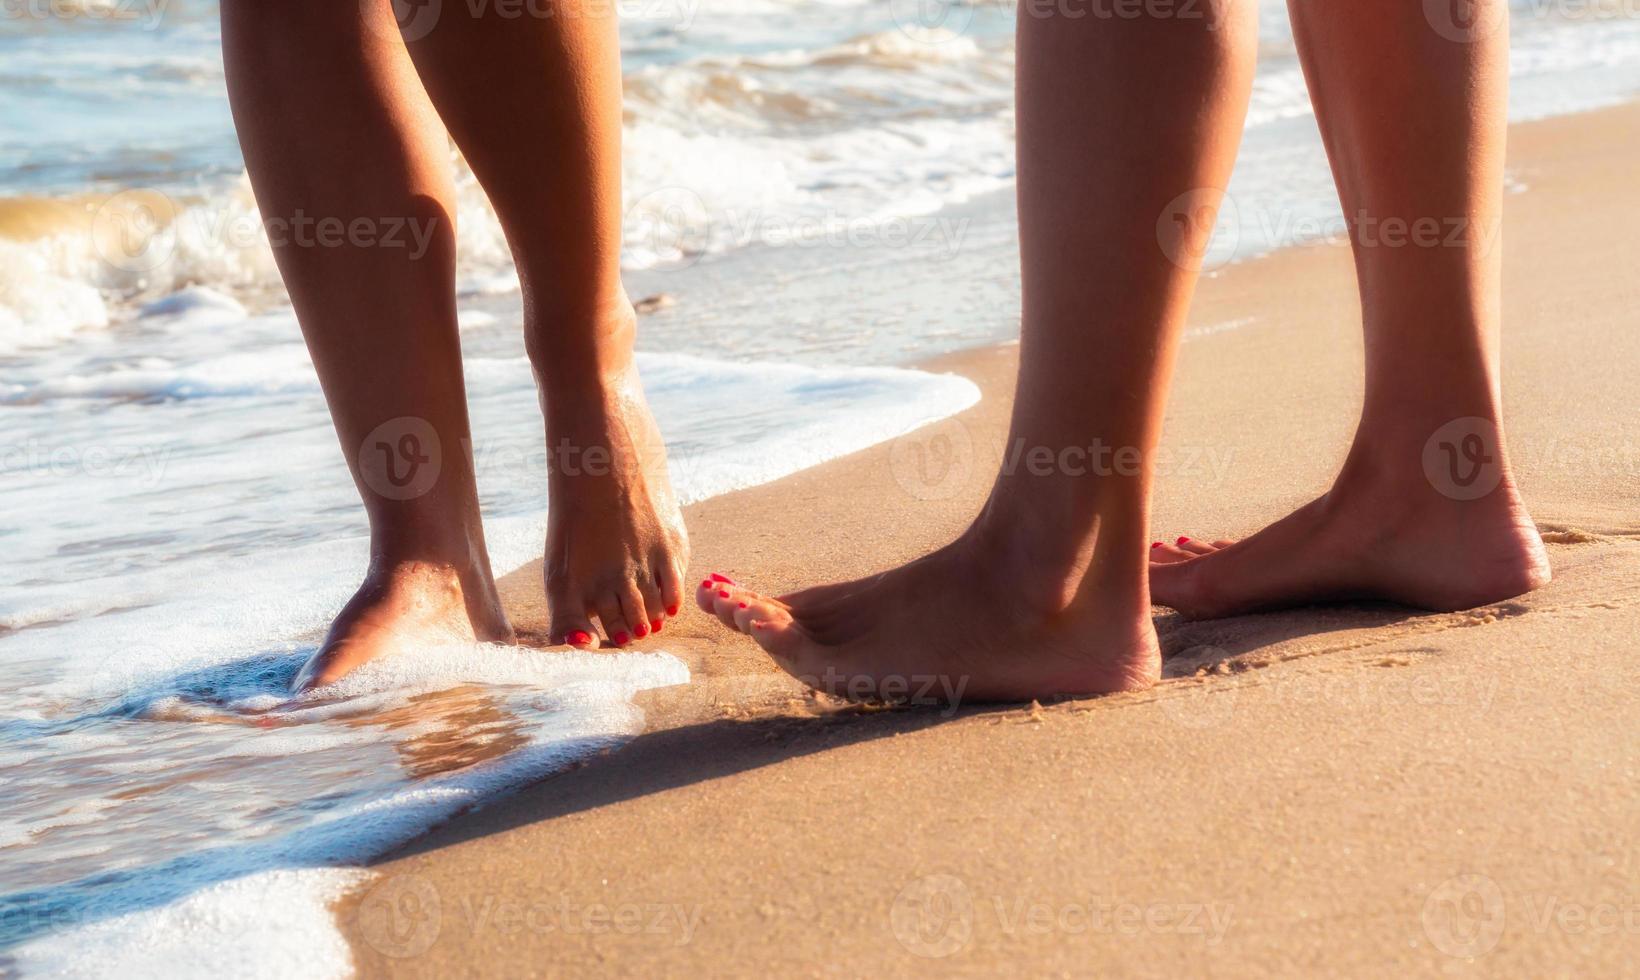 primo piano dei piedi nudi sulla sabbia foto